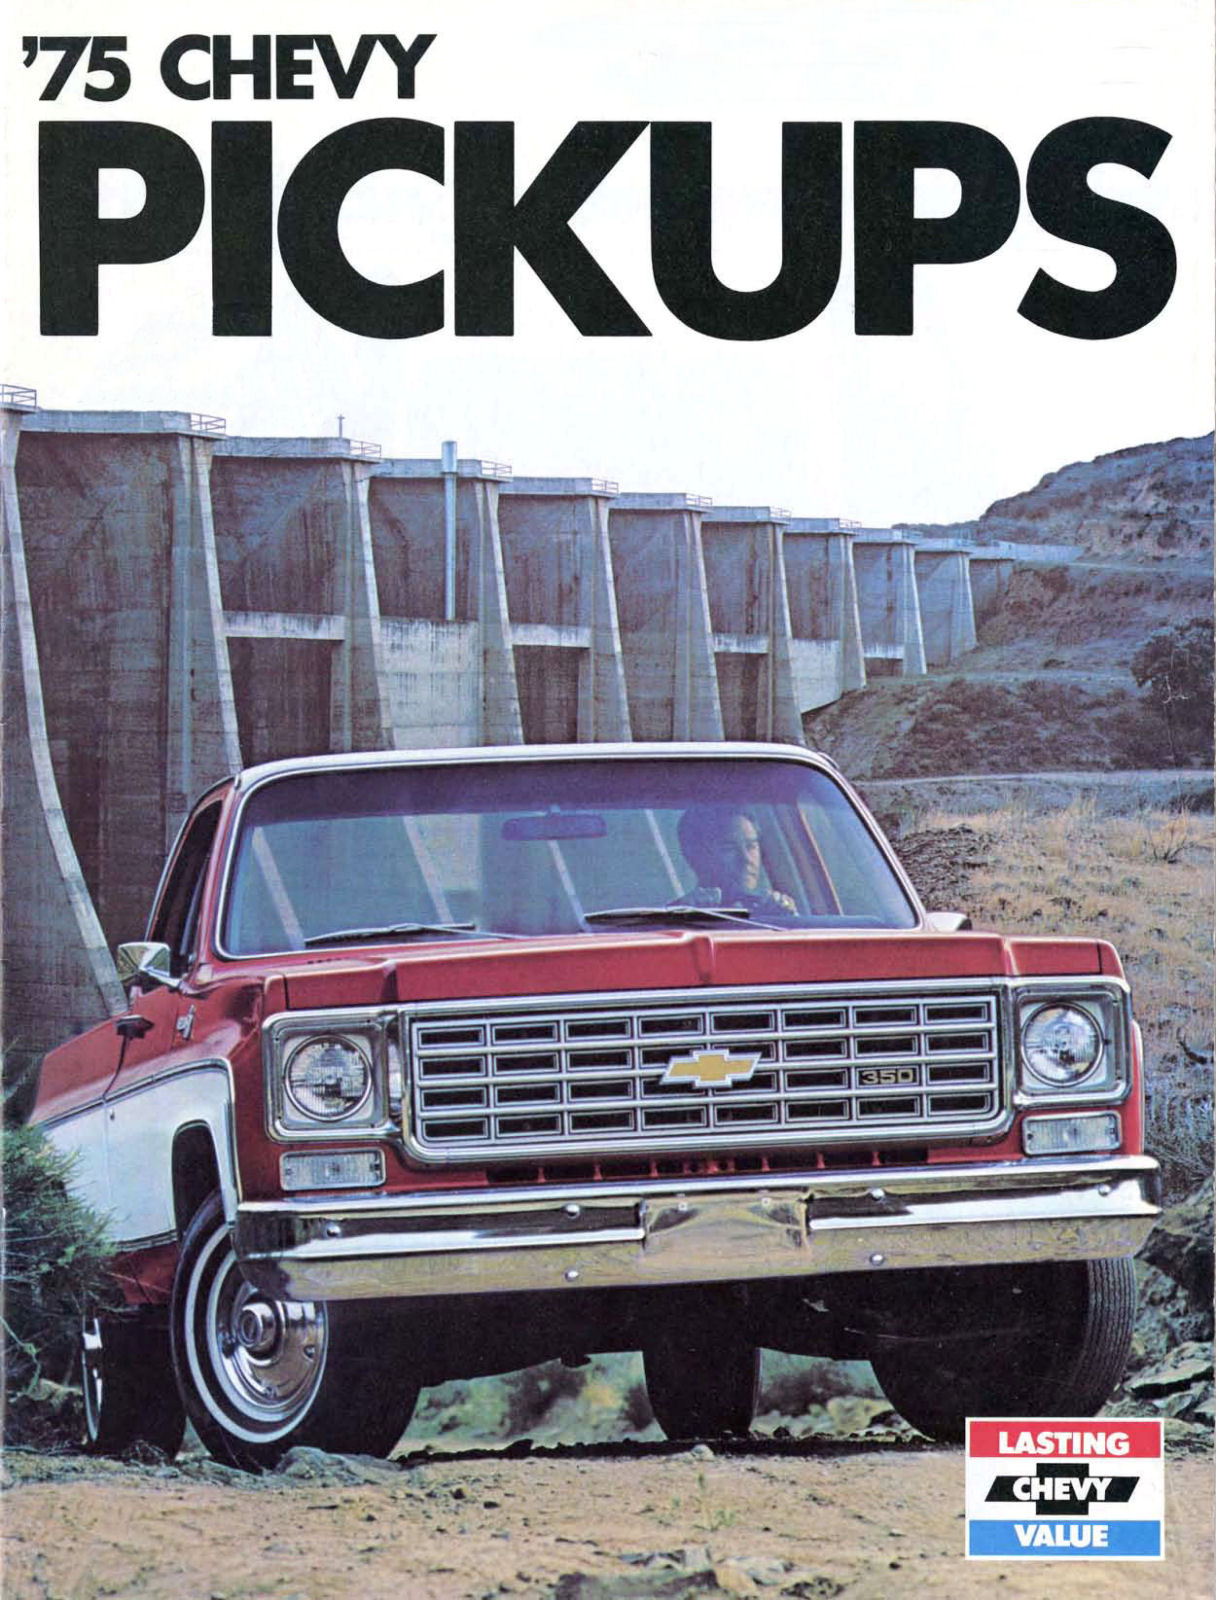 1975_Chevrolet_Pickups-01